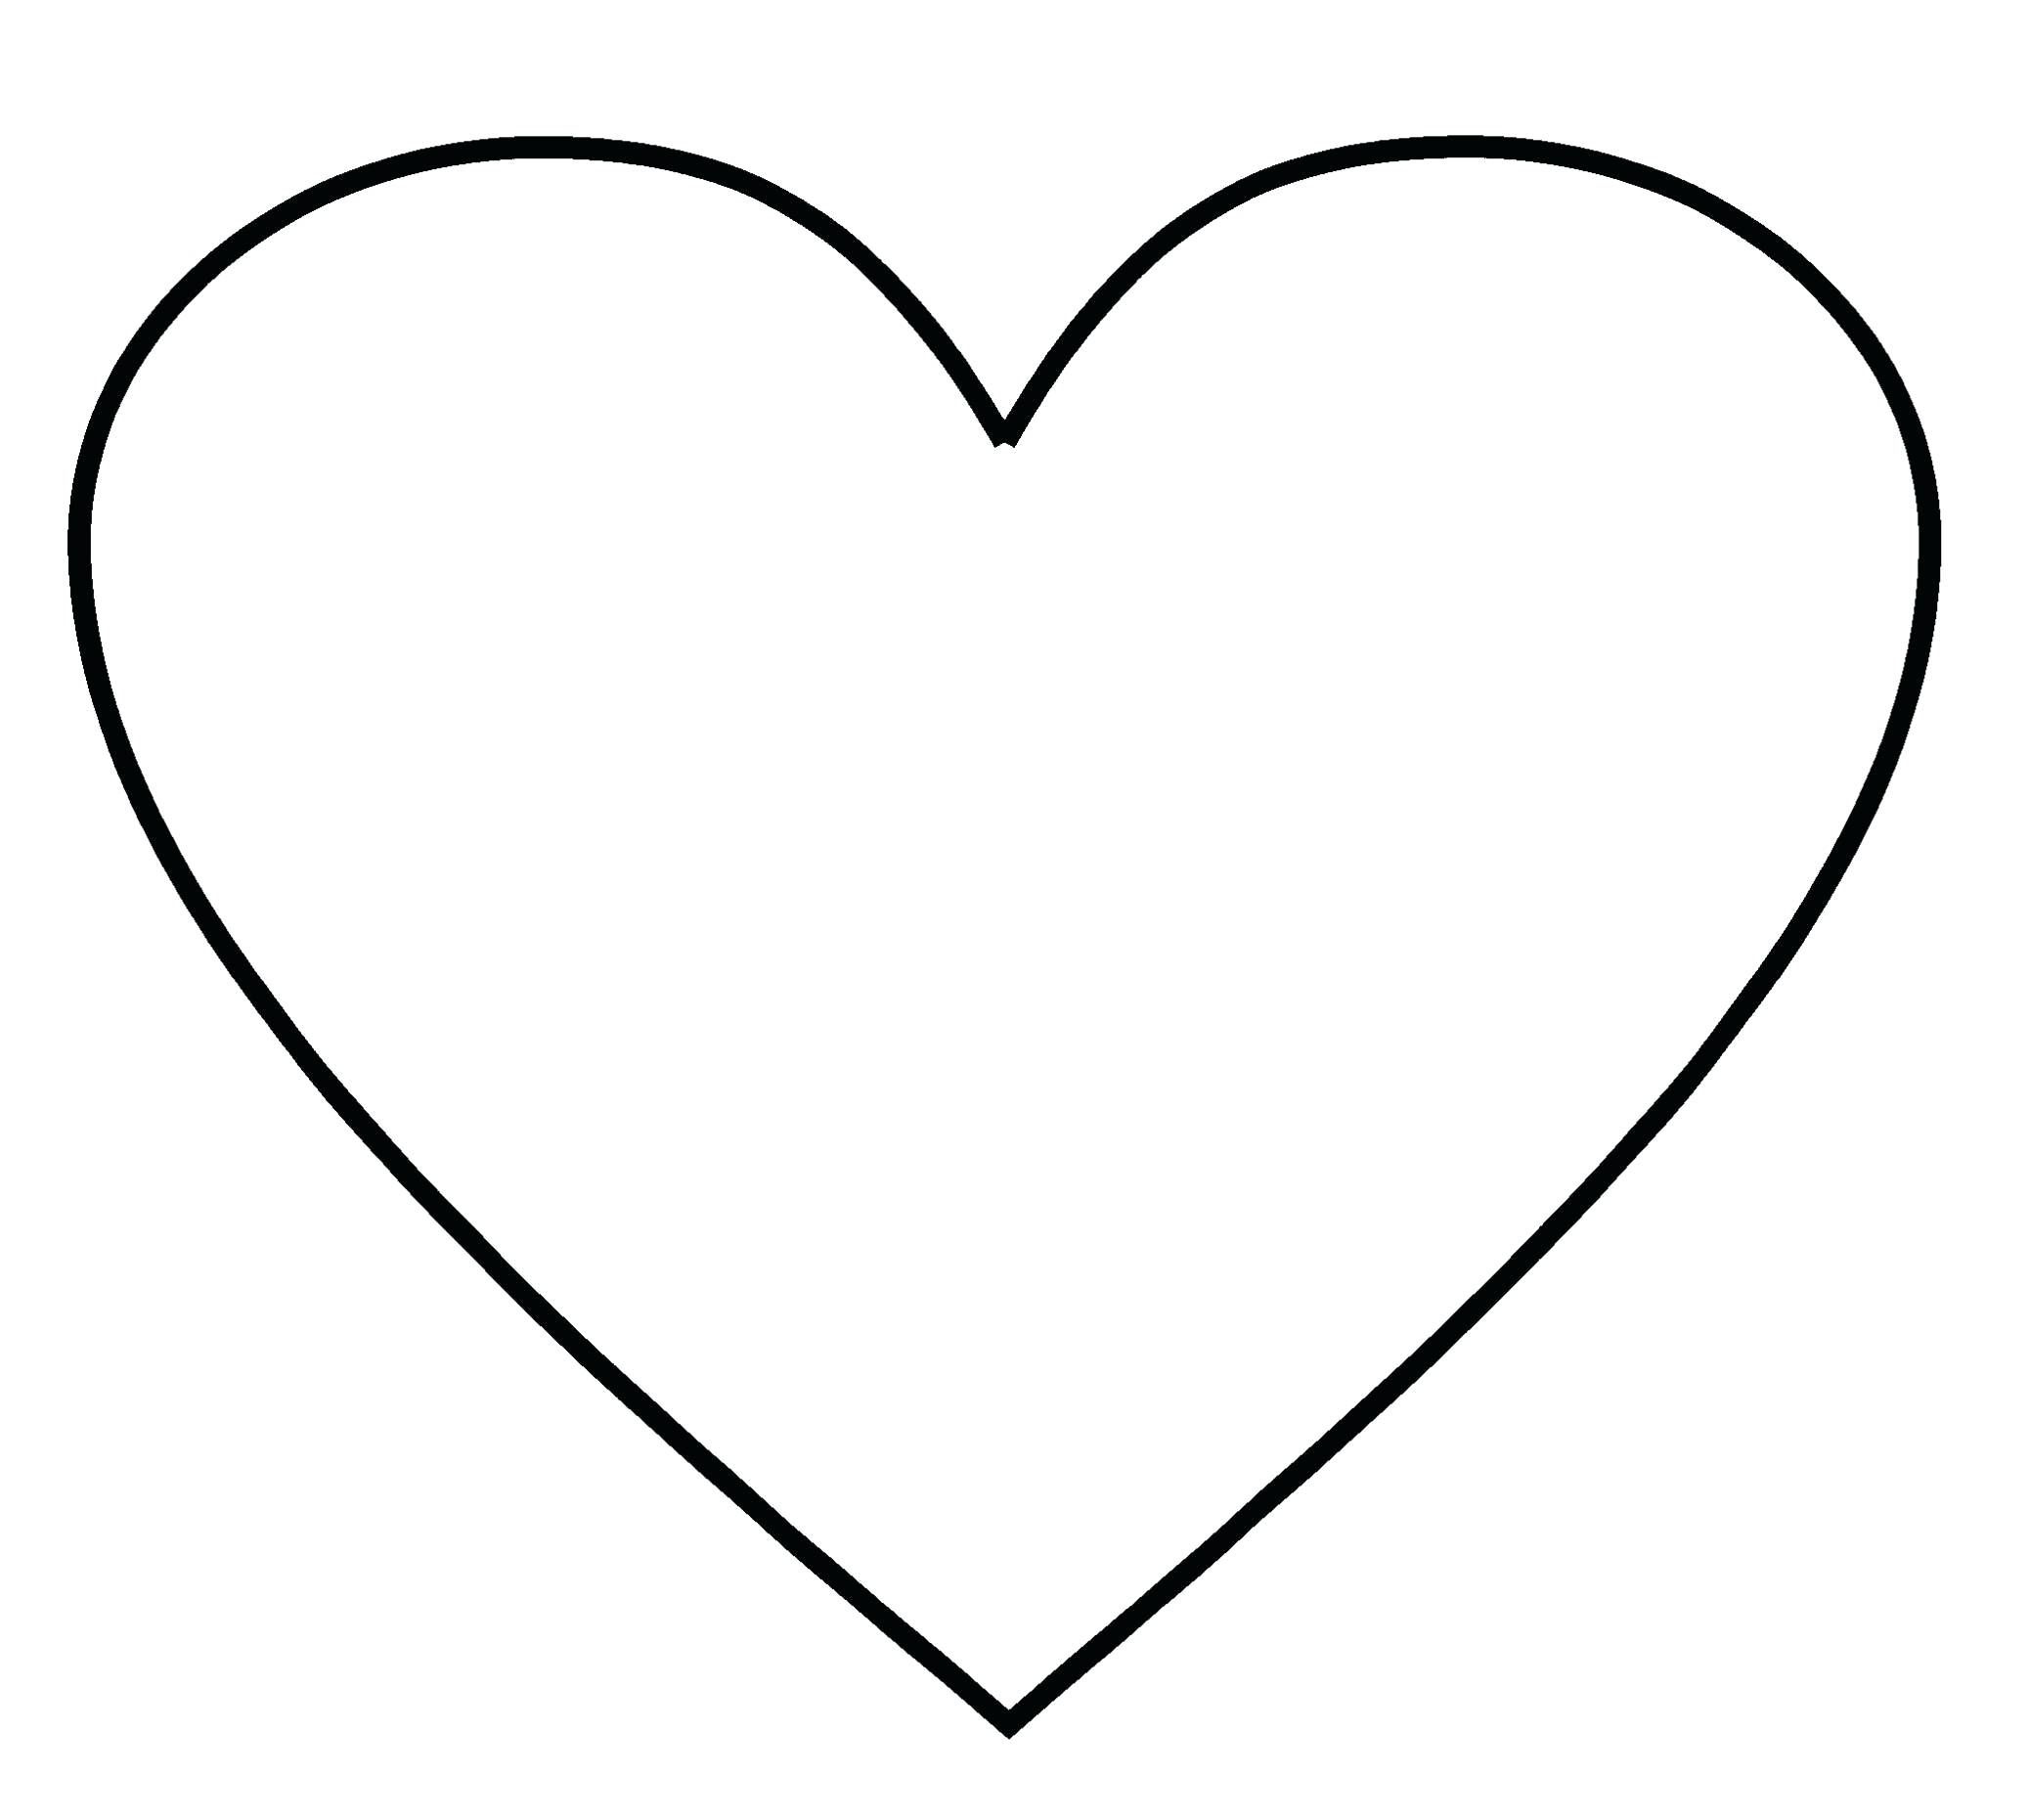 Heart Template Free Printable Heart Templates Large Medium Small Stencils To By Ww Corazones Imprimibles Plantilla De Coraz n Hacer Cajas De Regalo